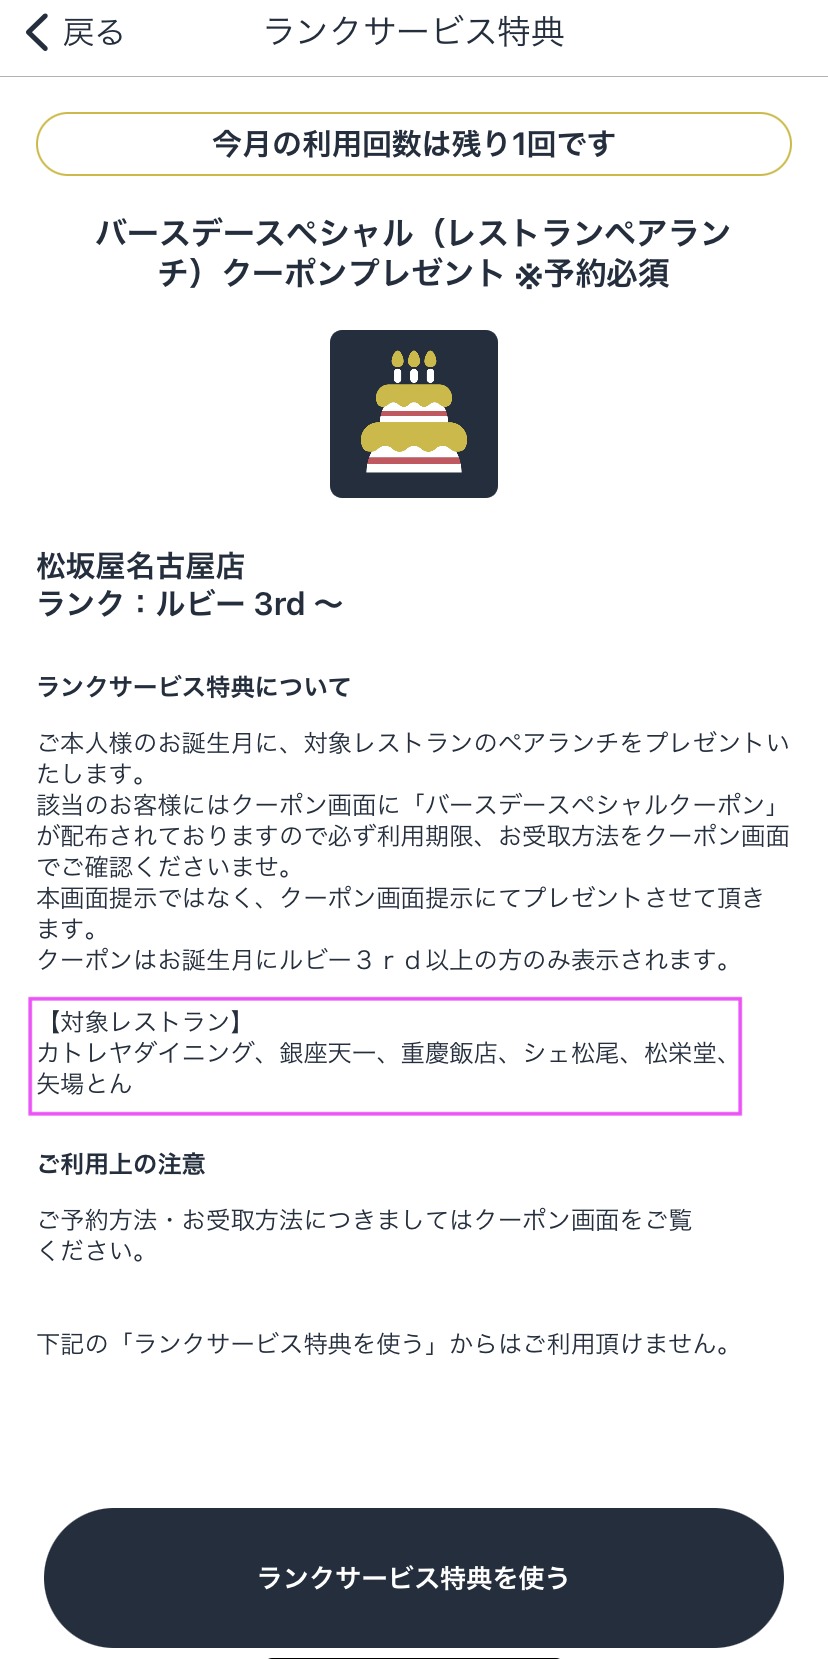 大丸松坂屋アプリのカラット別 誕生日特典でホールケーキまたはオードブルとペアランチが無料でもらえたよ Da Lifeブログ